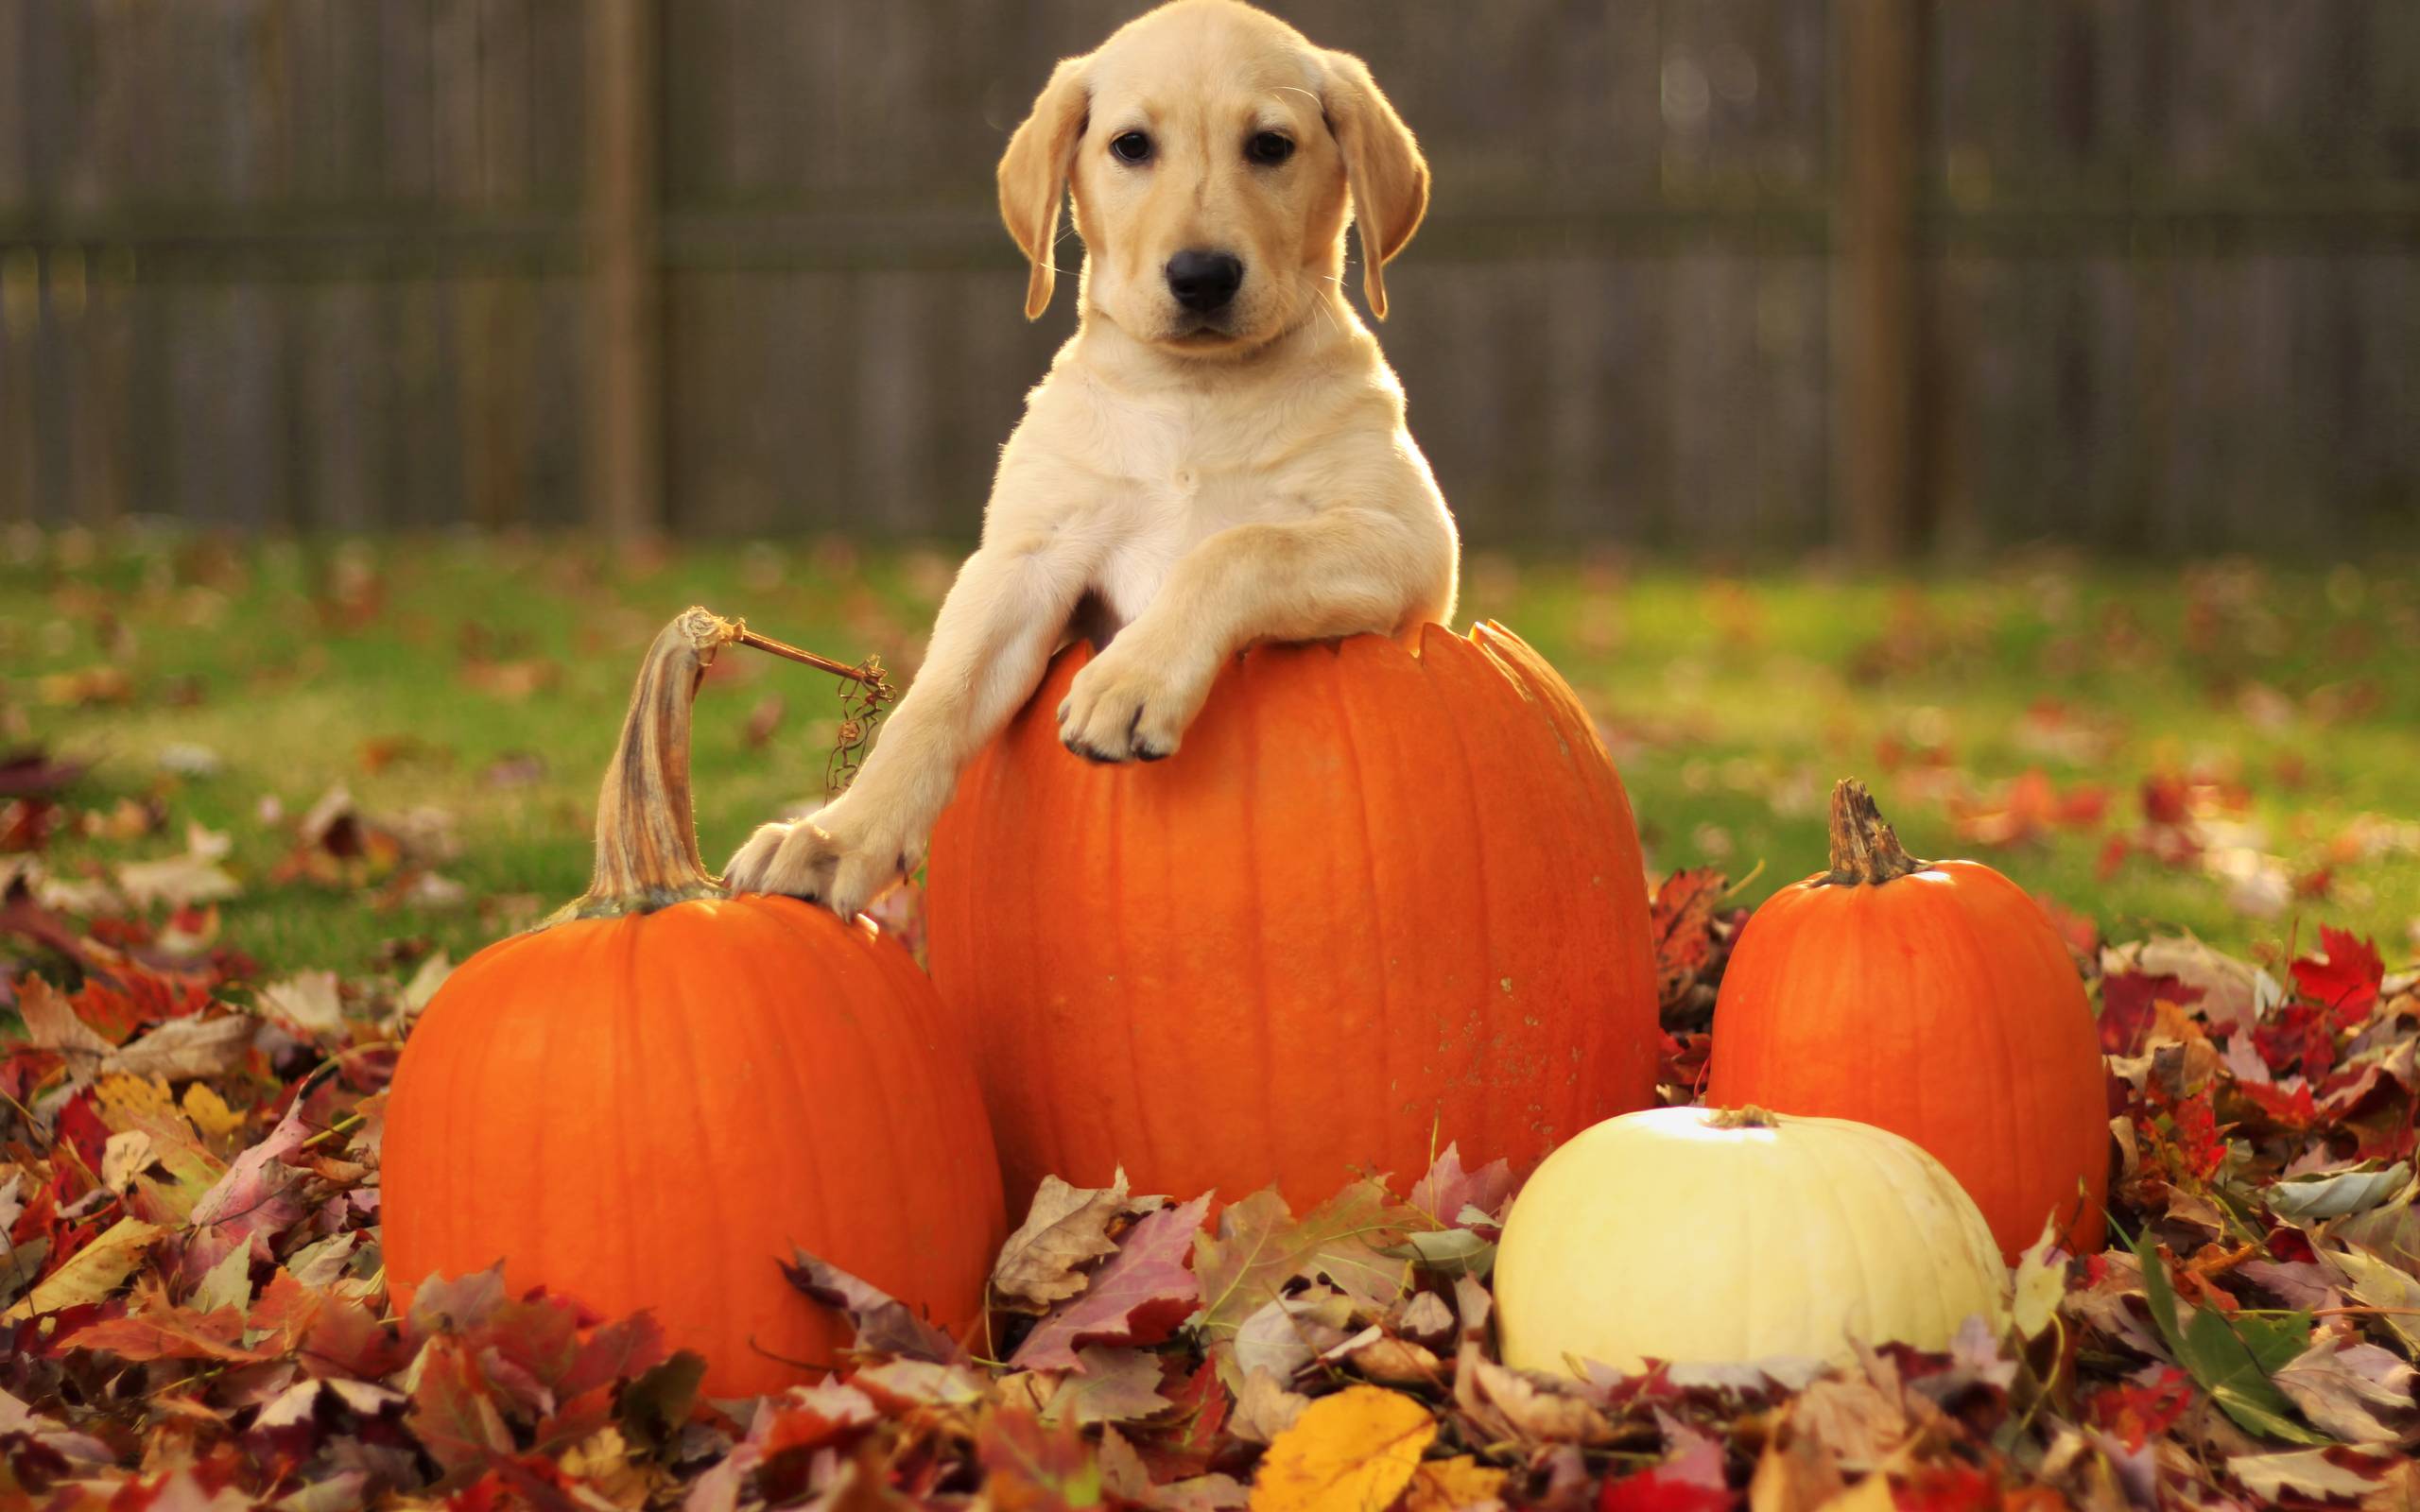 Autumn Free Wallpaper pumpkin and a.dog Wallpaper